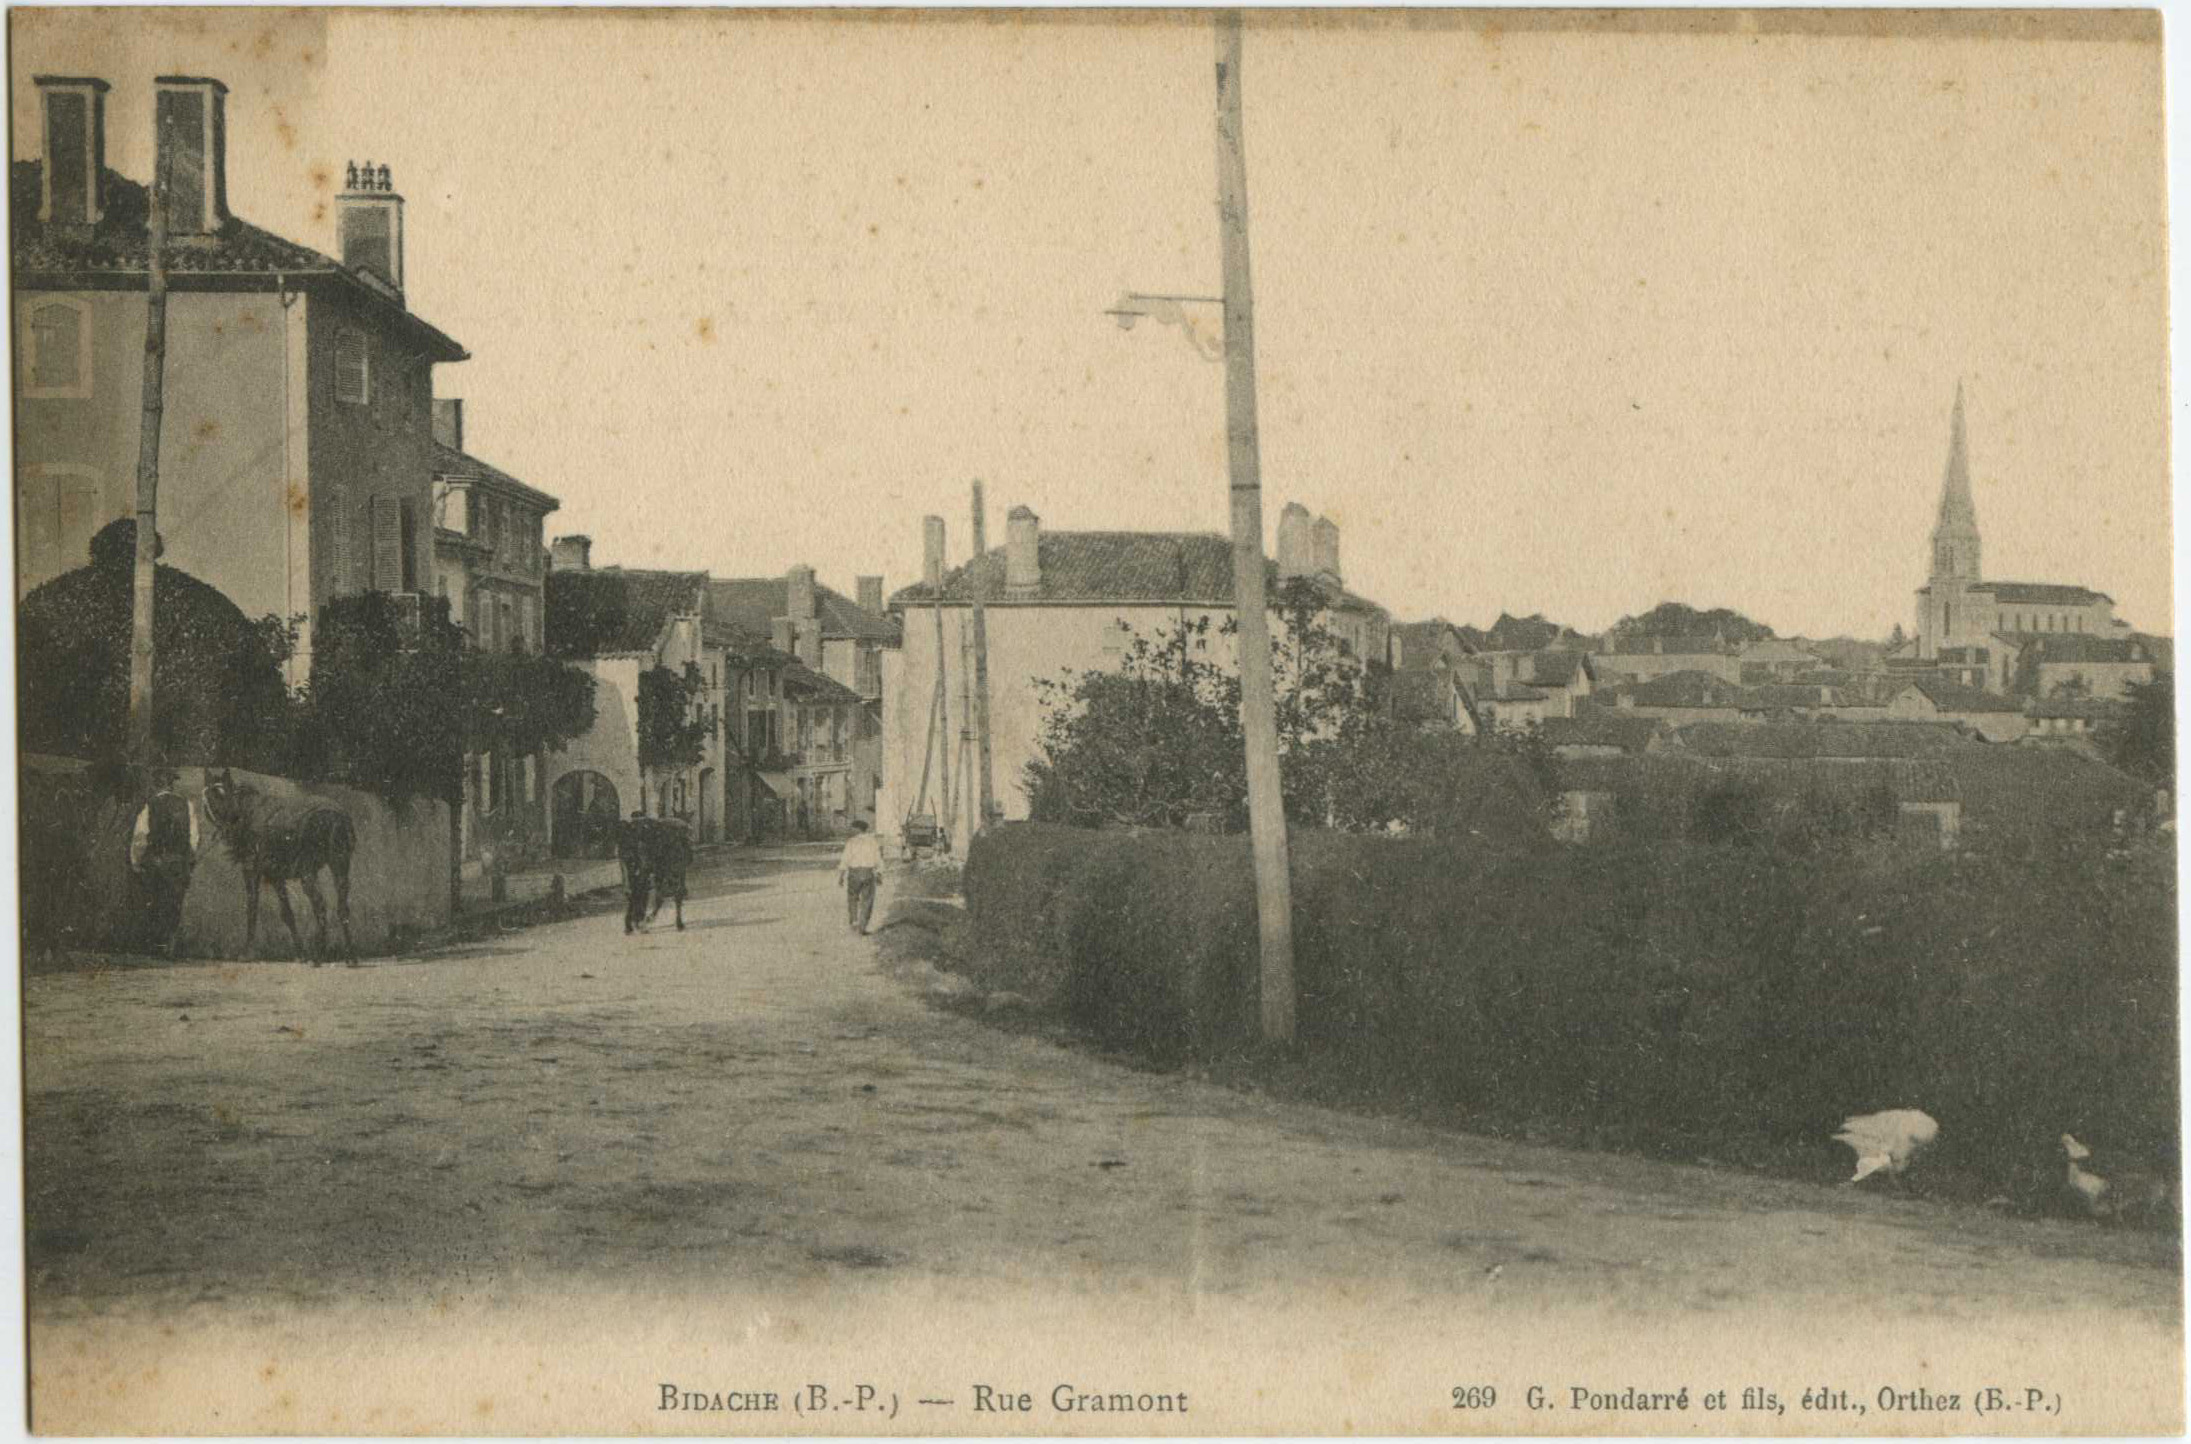 Bidache - Rue Gramont